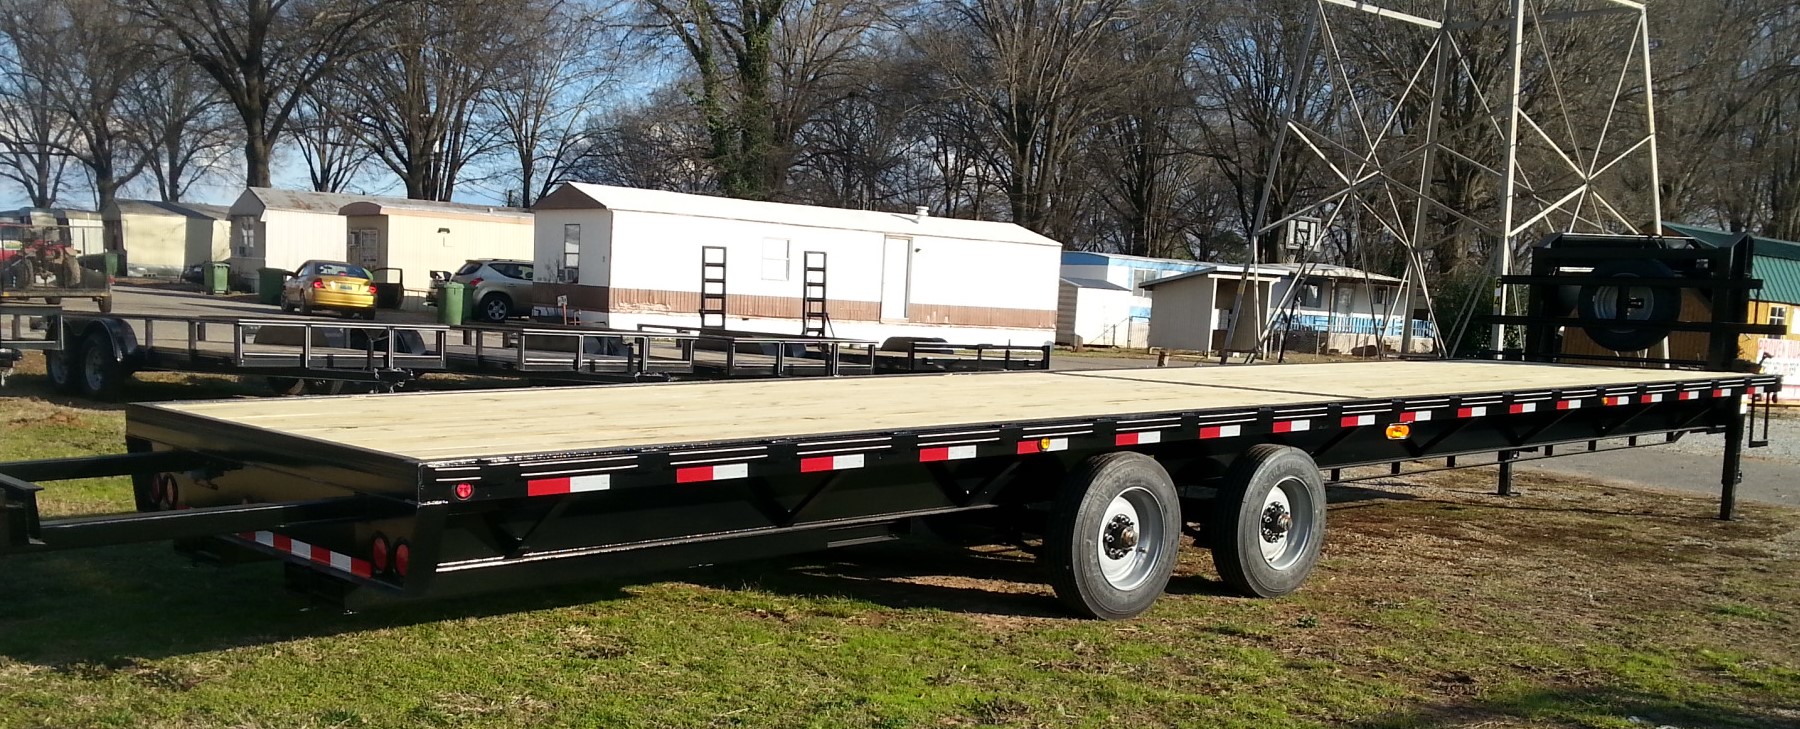 20 ft gooseneck dump trailer